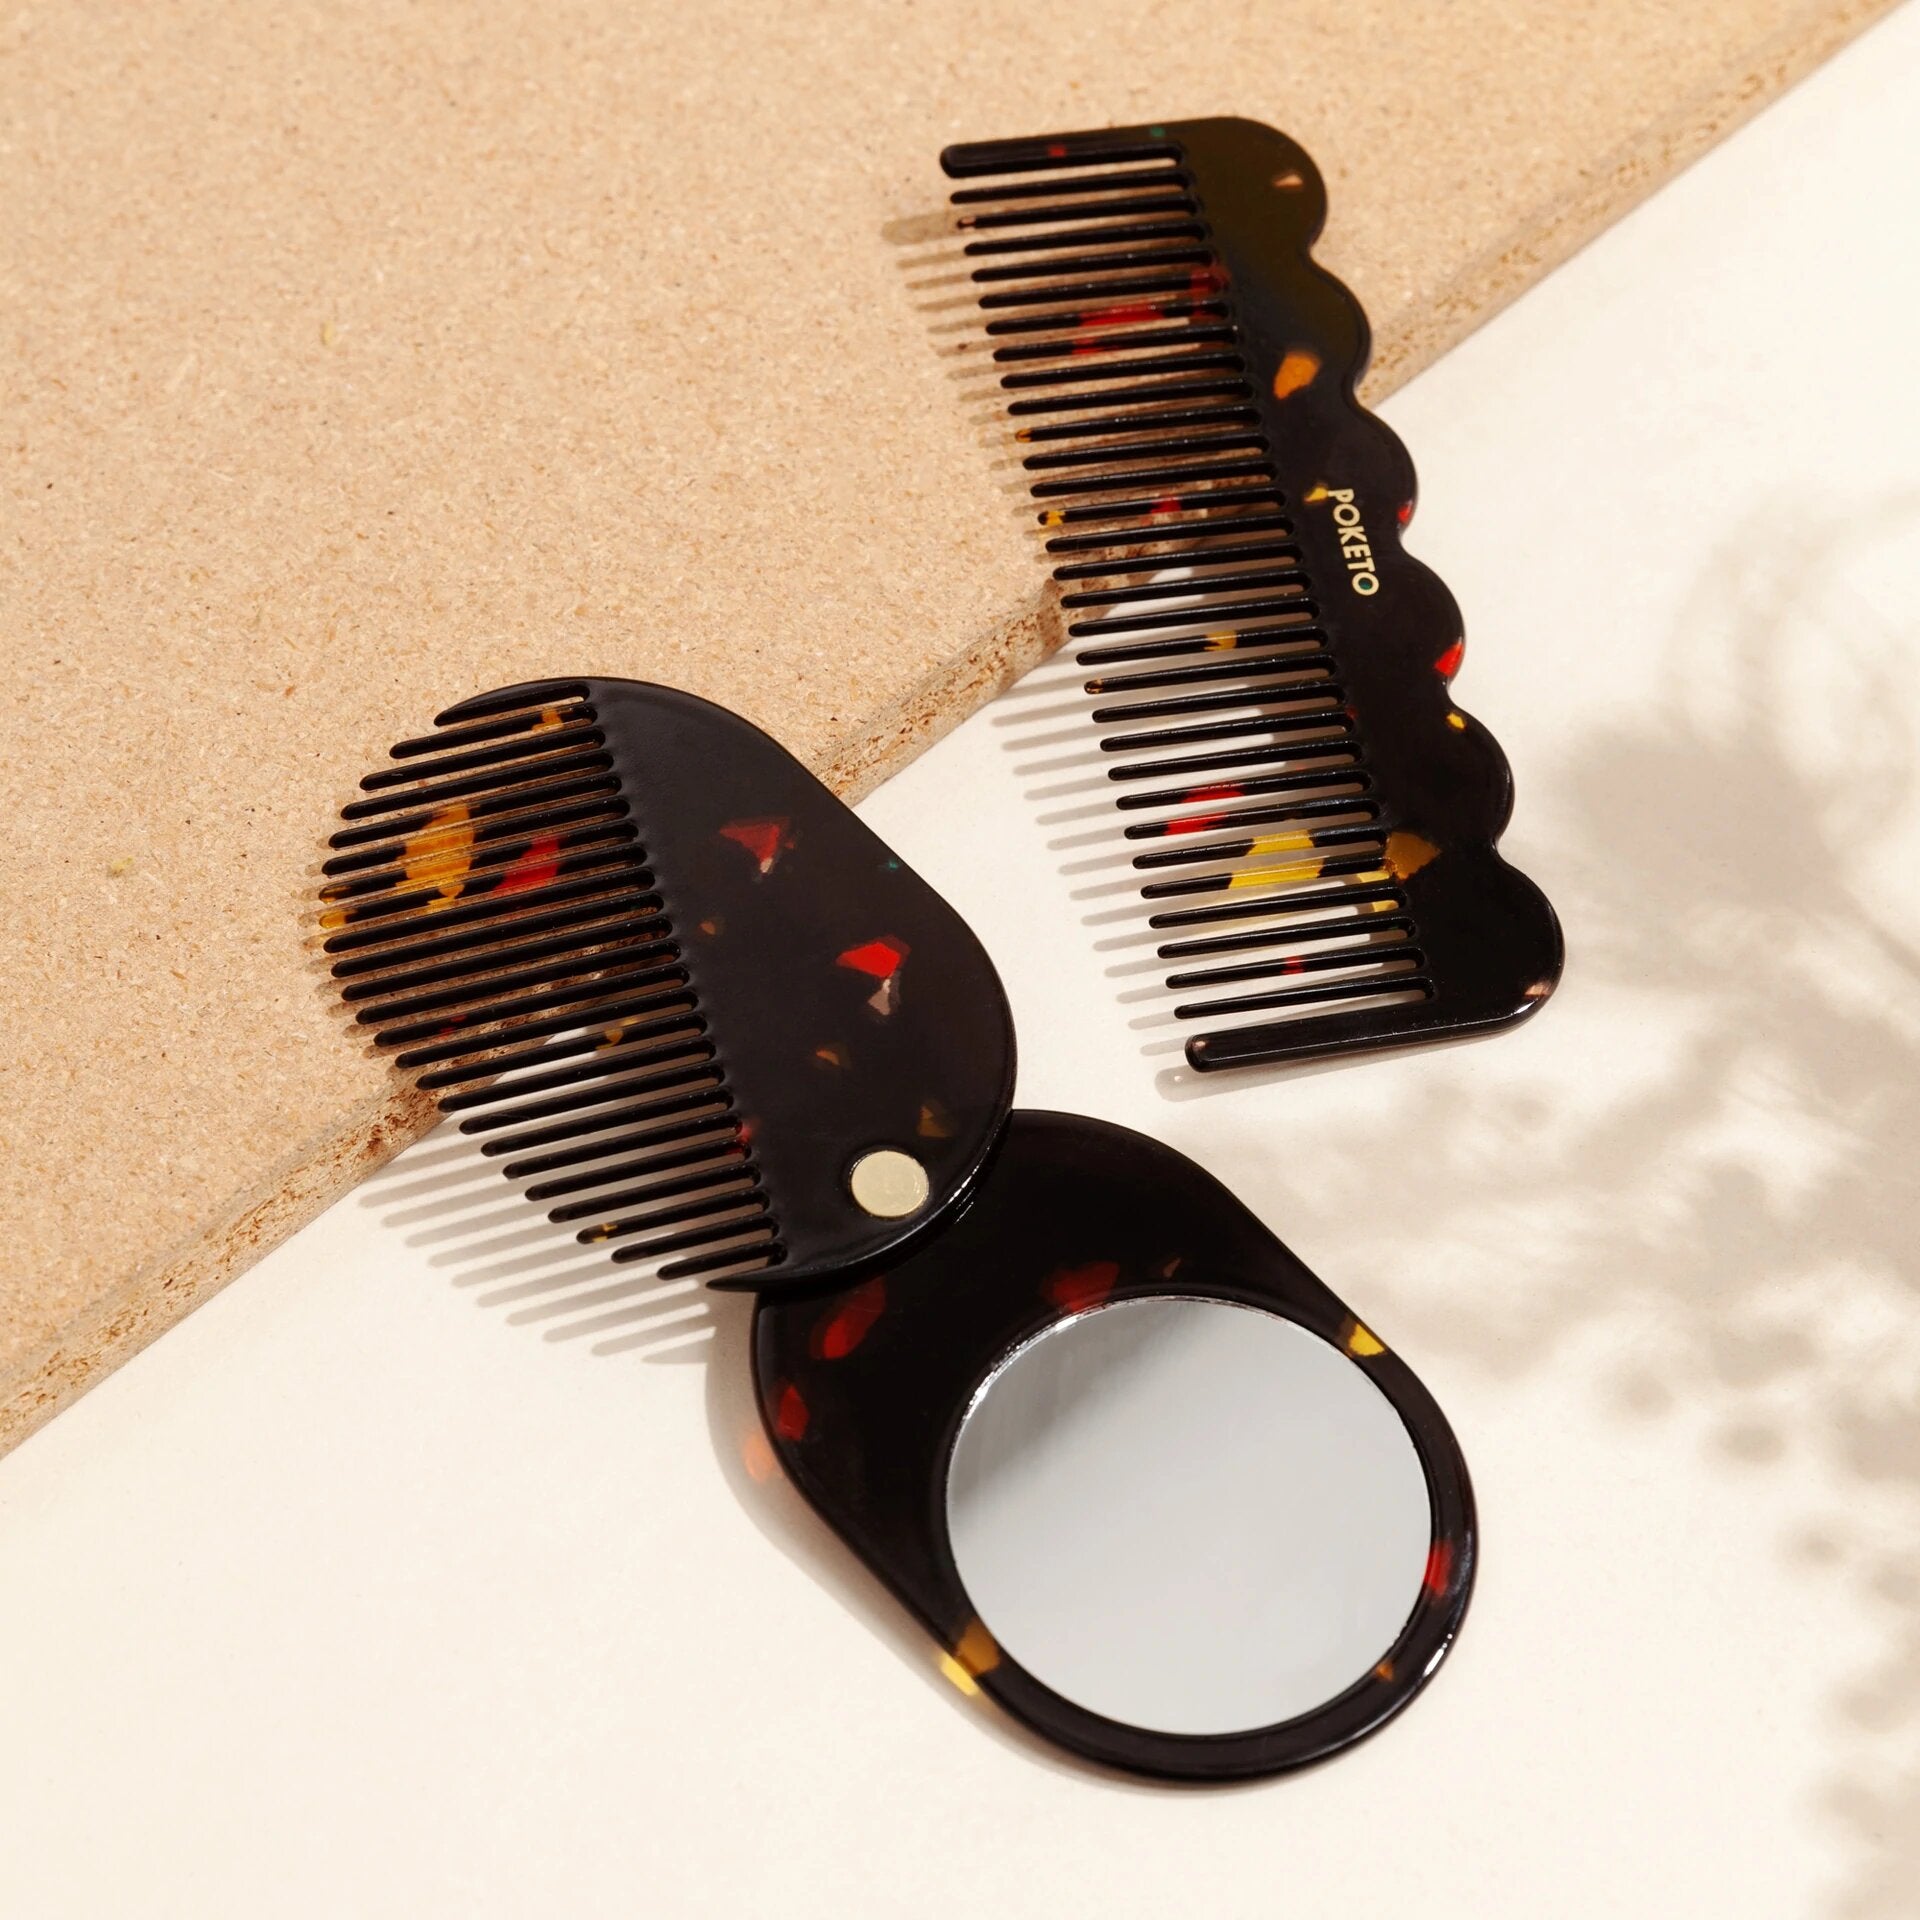 Poketo Wave Comb in Black Amber